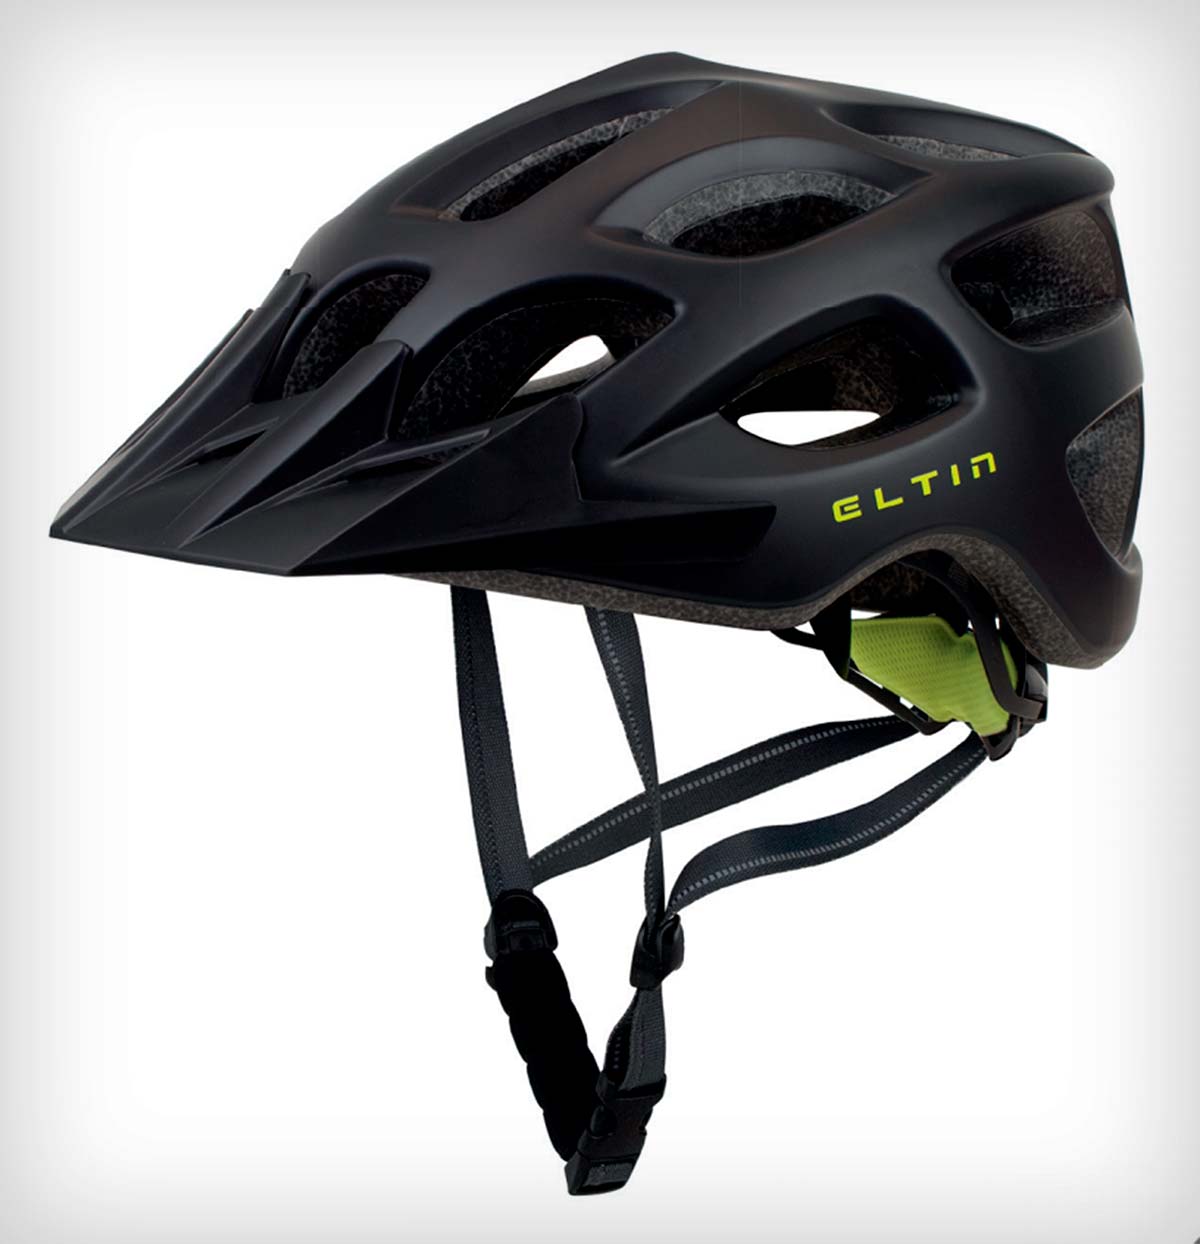 En TodoMountainBike: Eltin Brave, un casco polivalente y fiable de MTB por menos de 35€